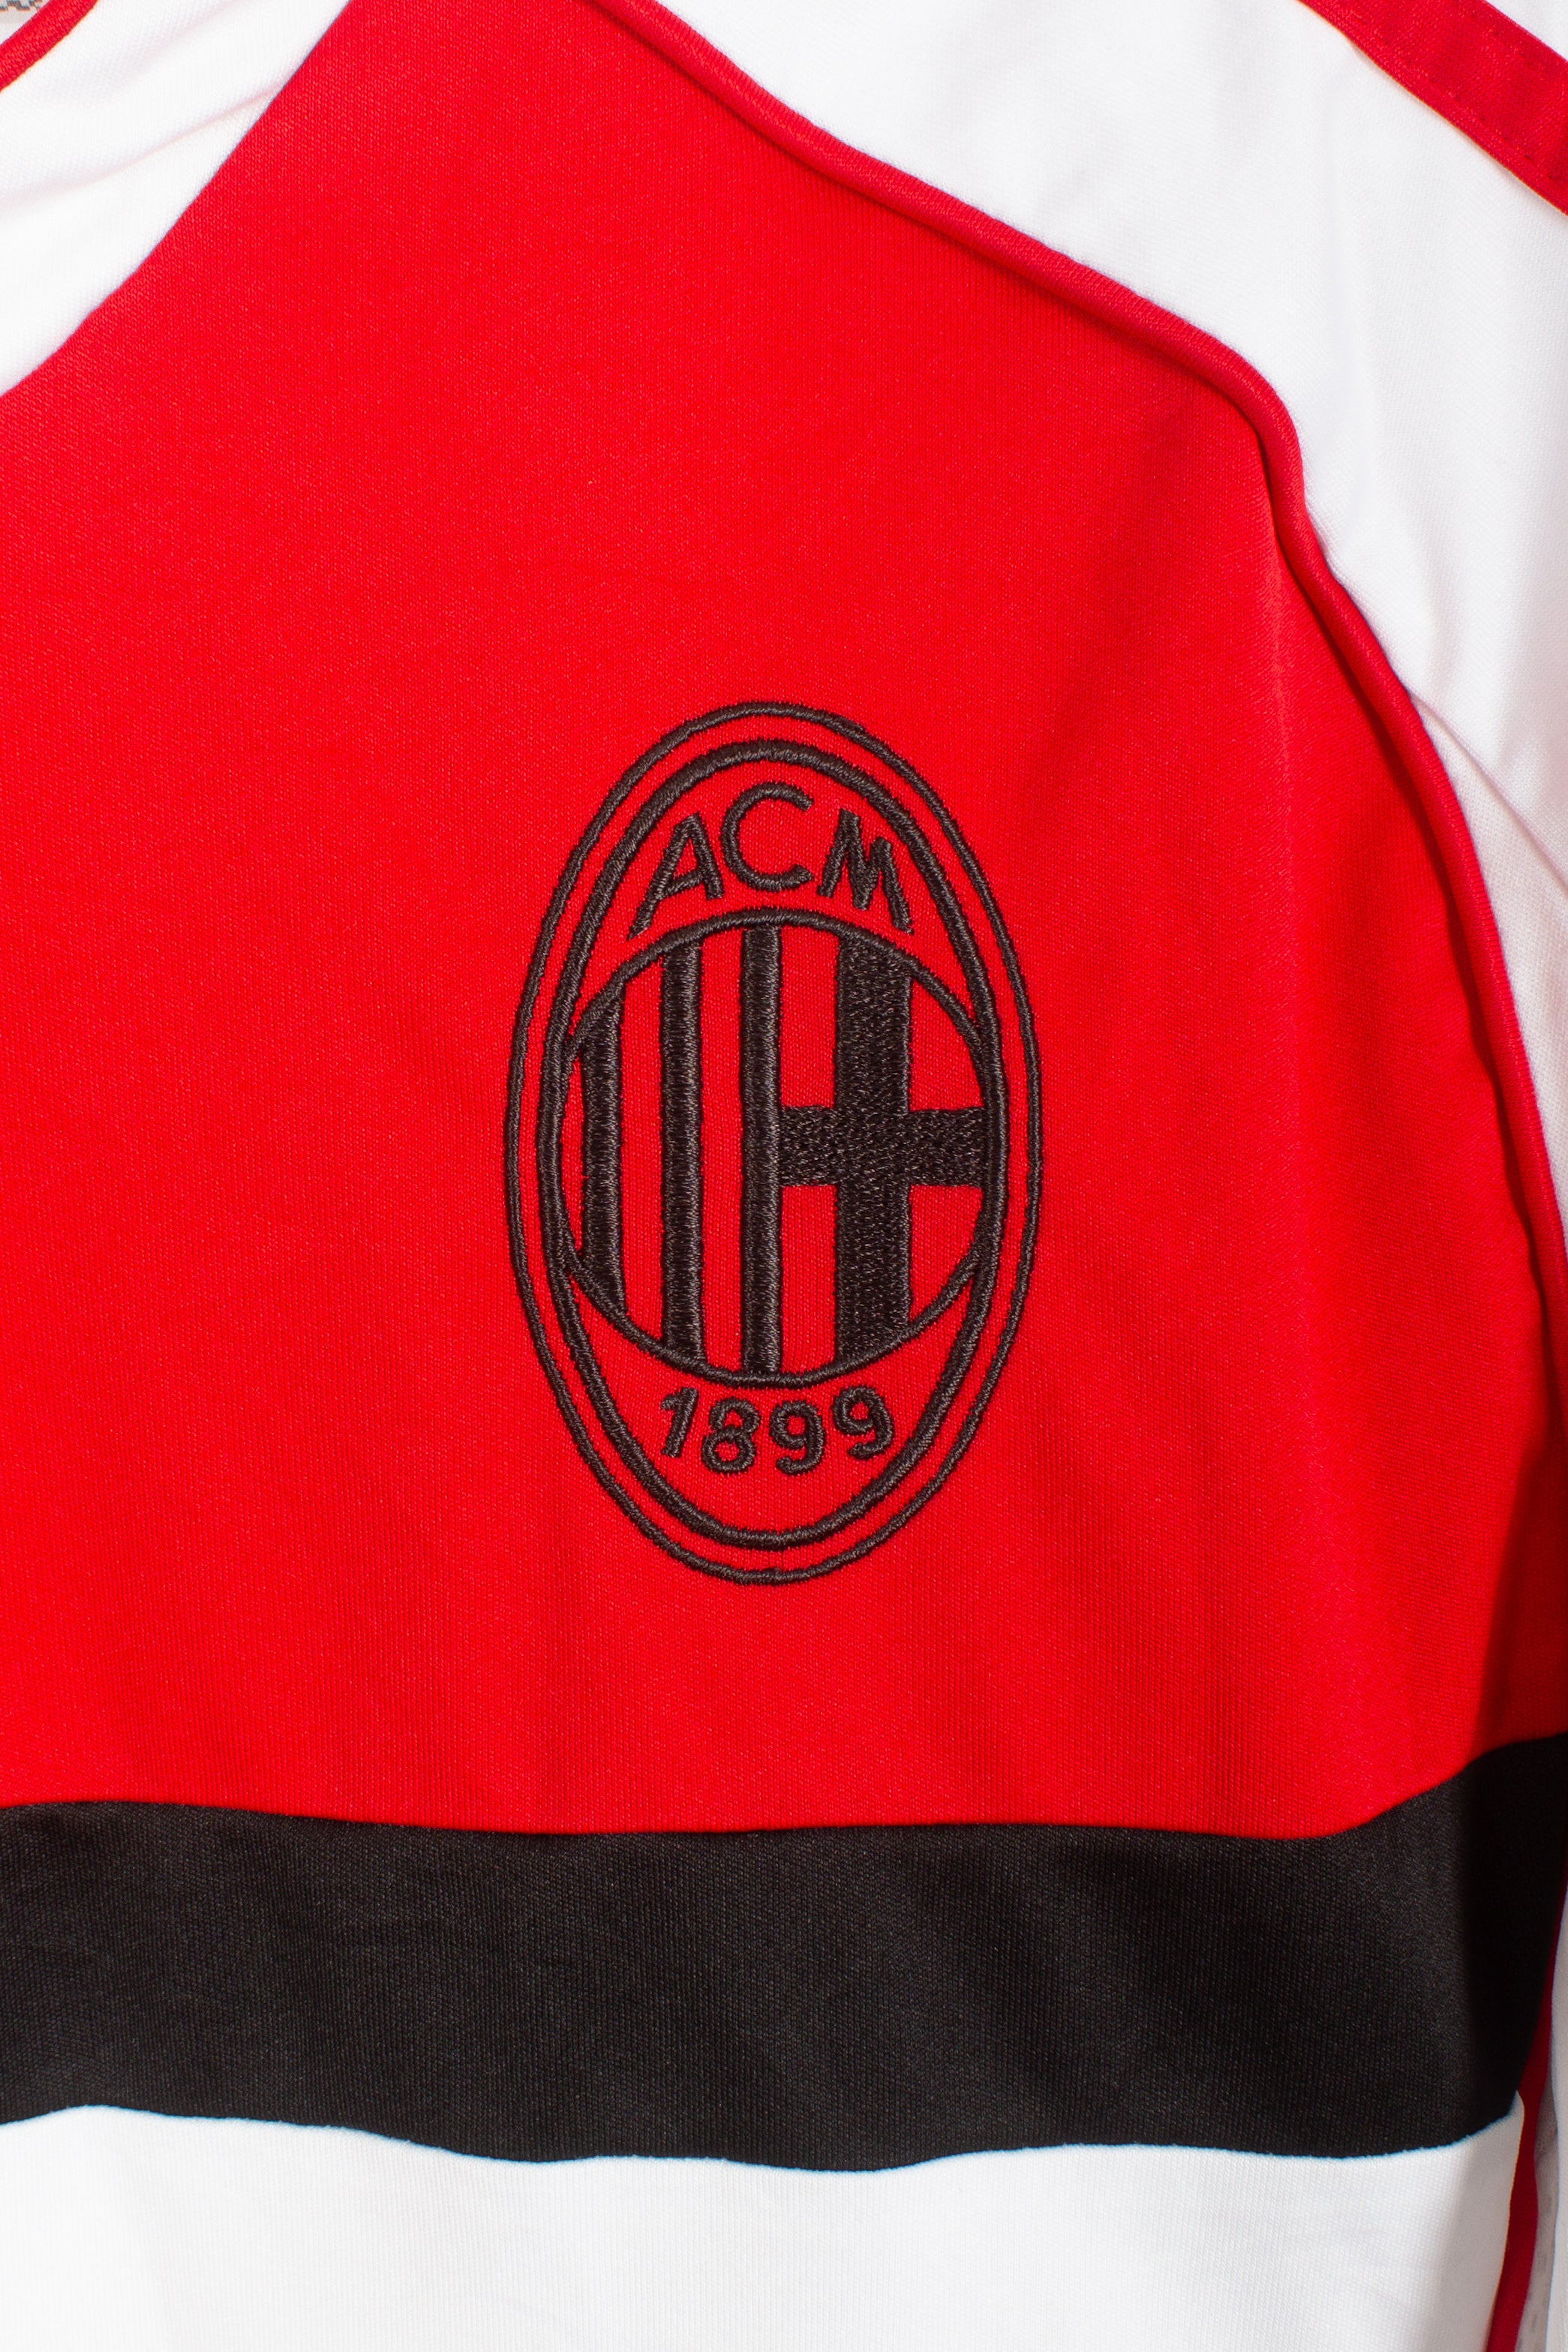 AC Milan 2011 Training Shirt (S)